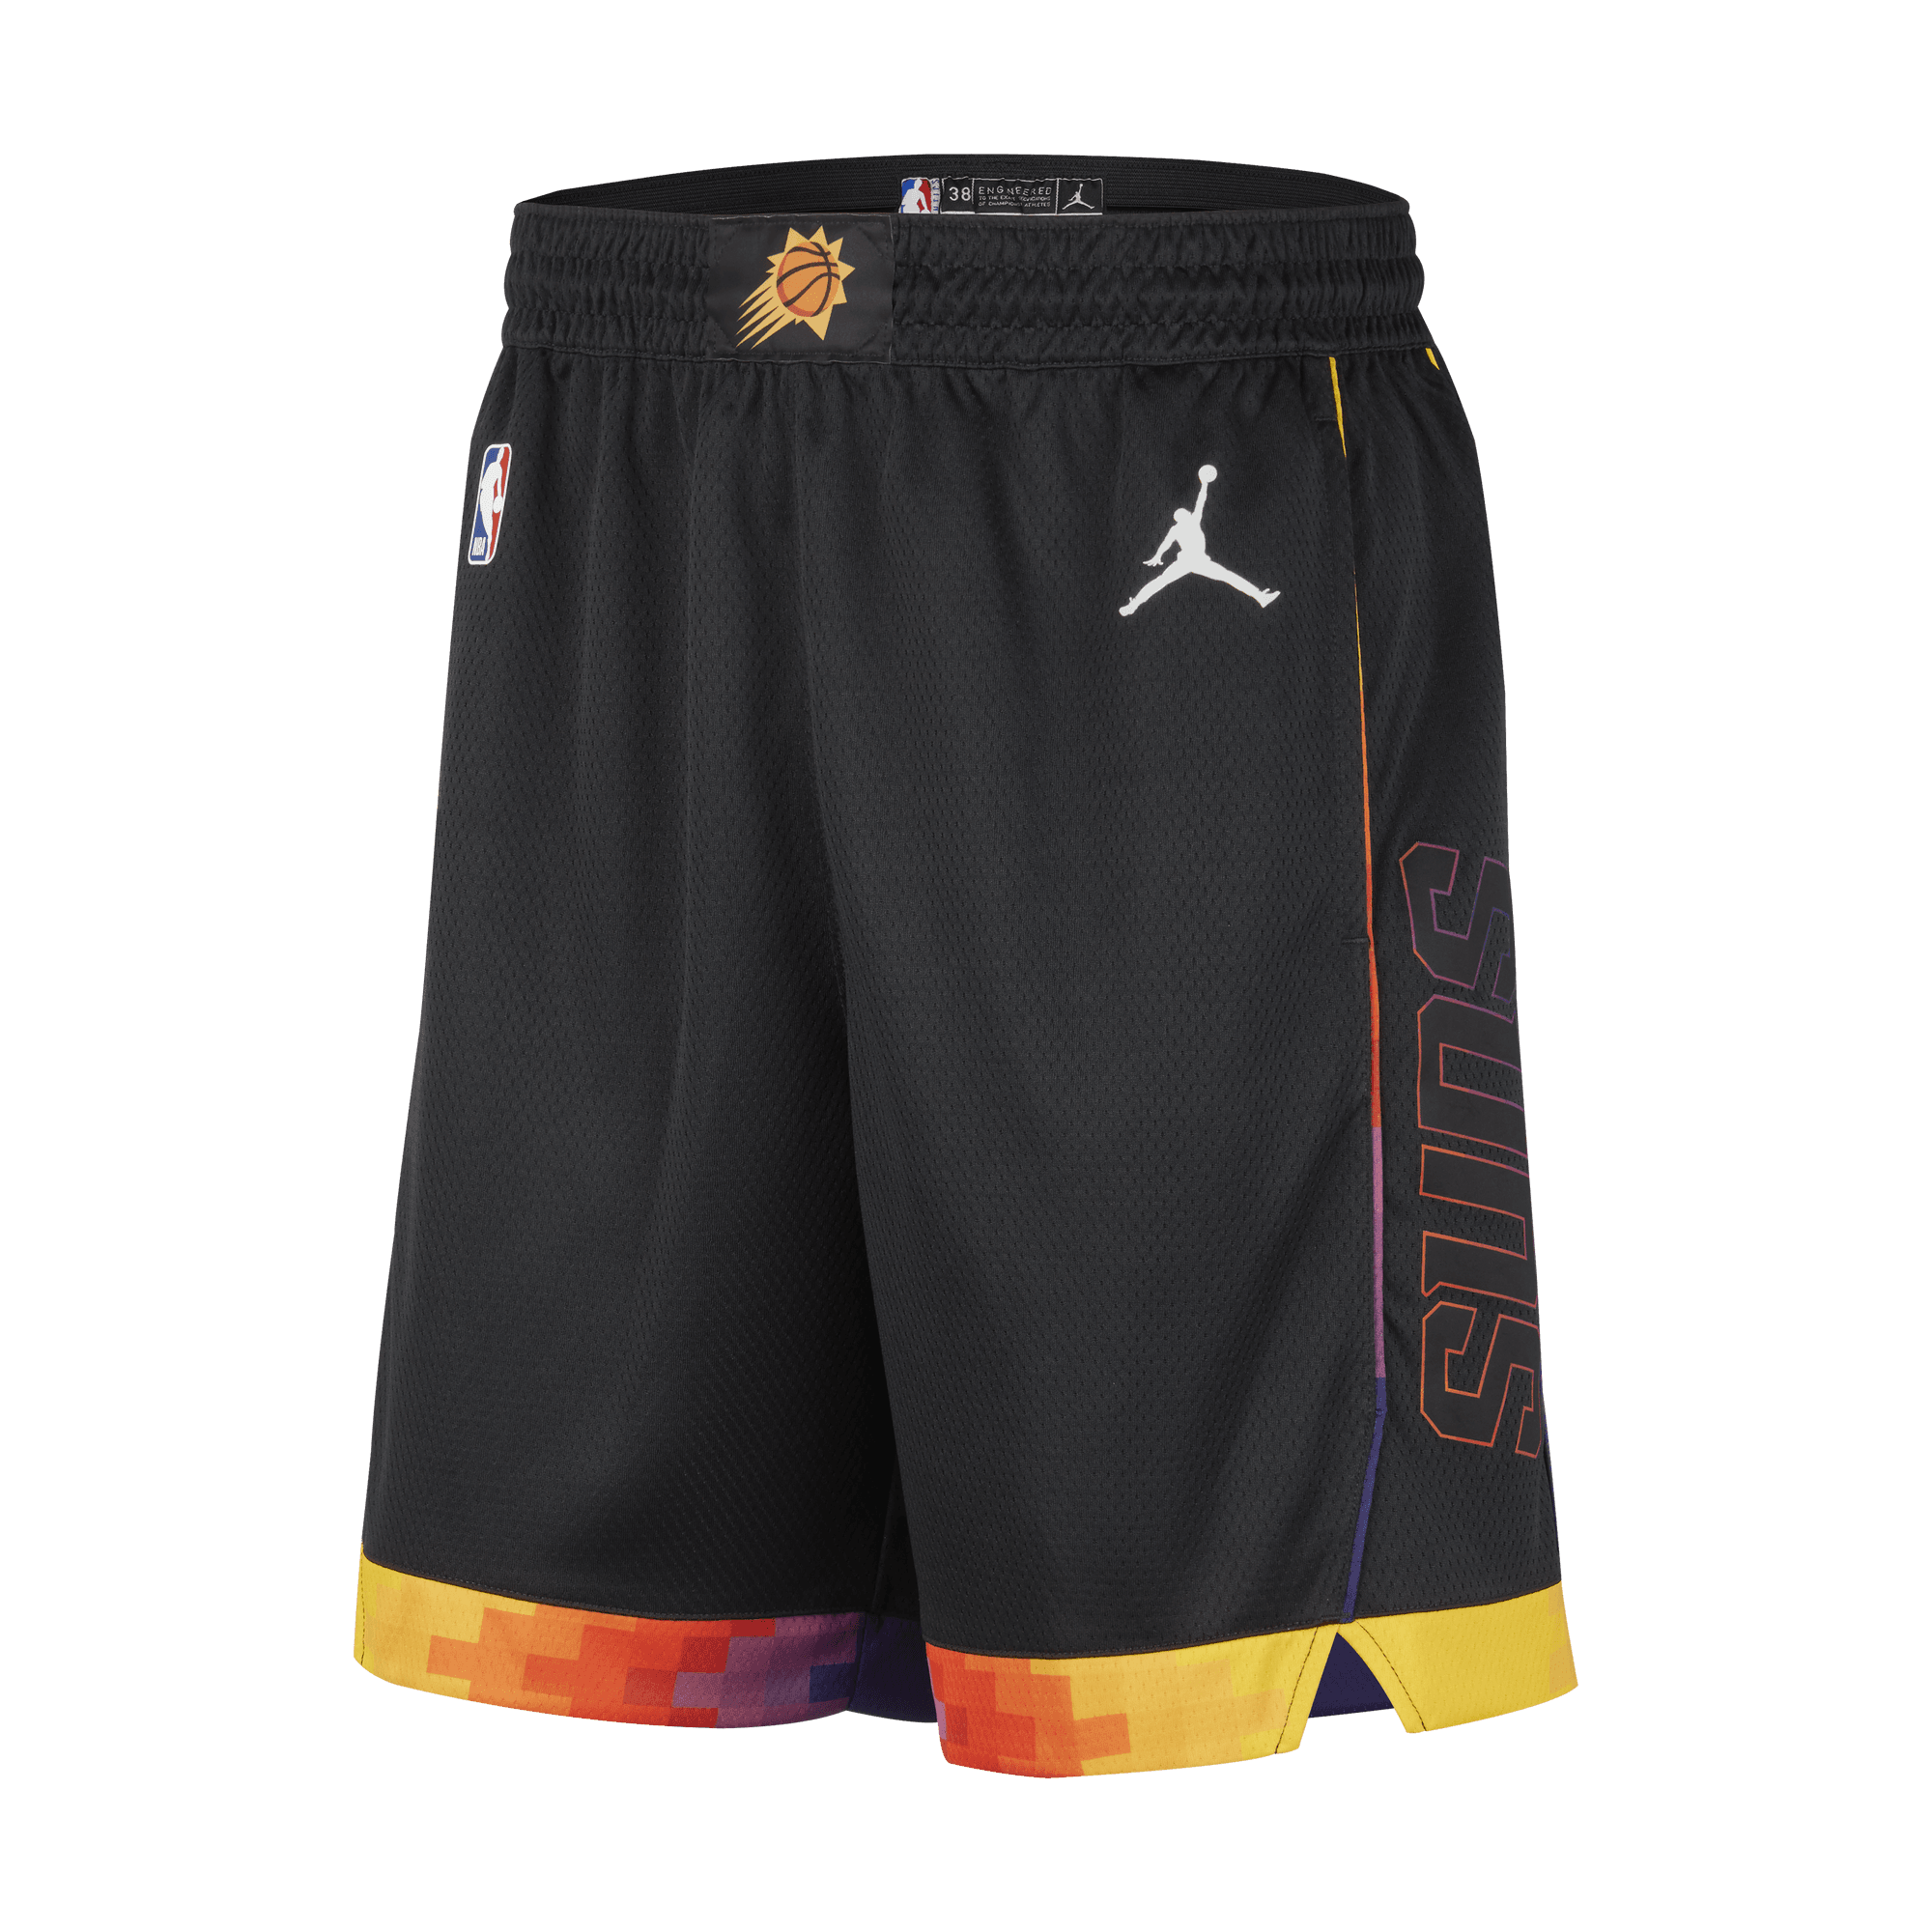 Basketball Shorts Store  Nba outfit, Basketball clothes, Basketball shorts